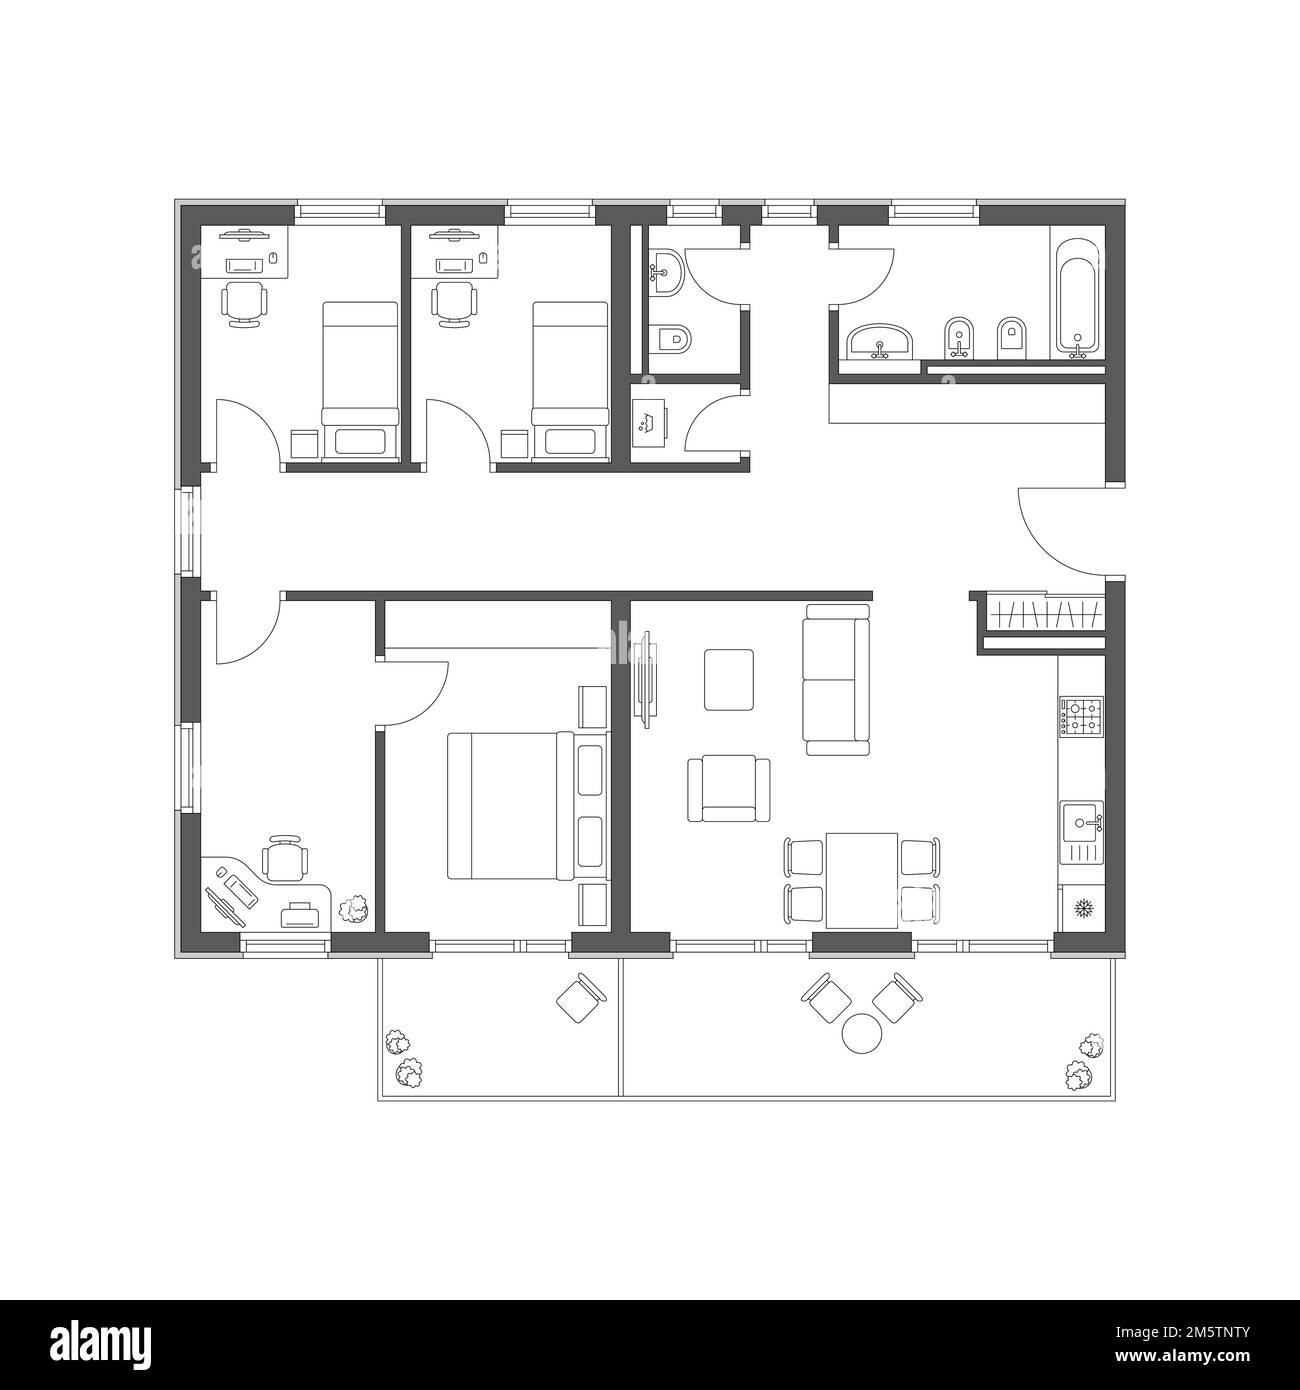 Plan de l'appartement avec mobilier Illustration de Vecteur